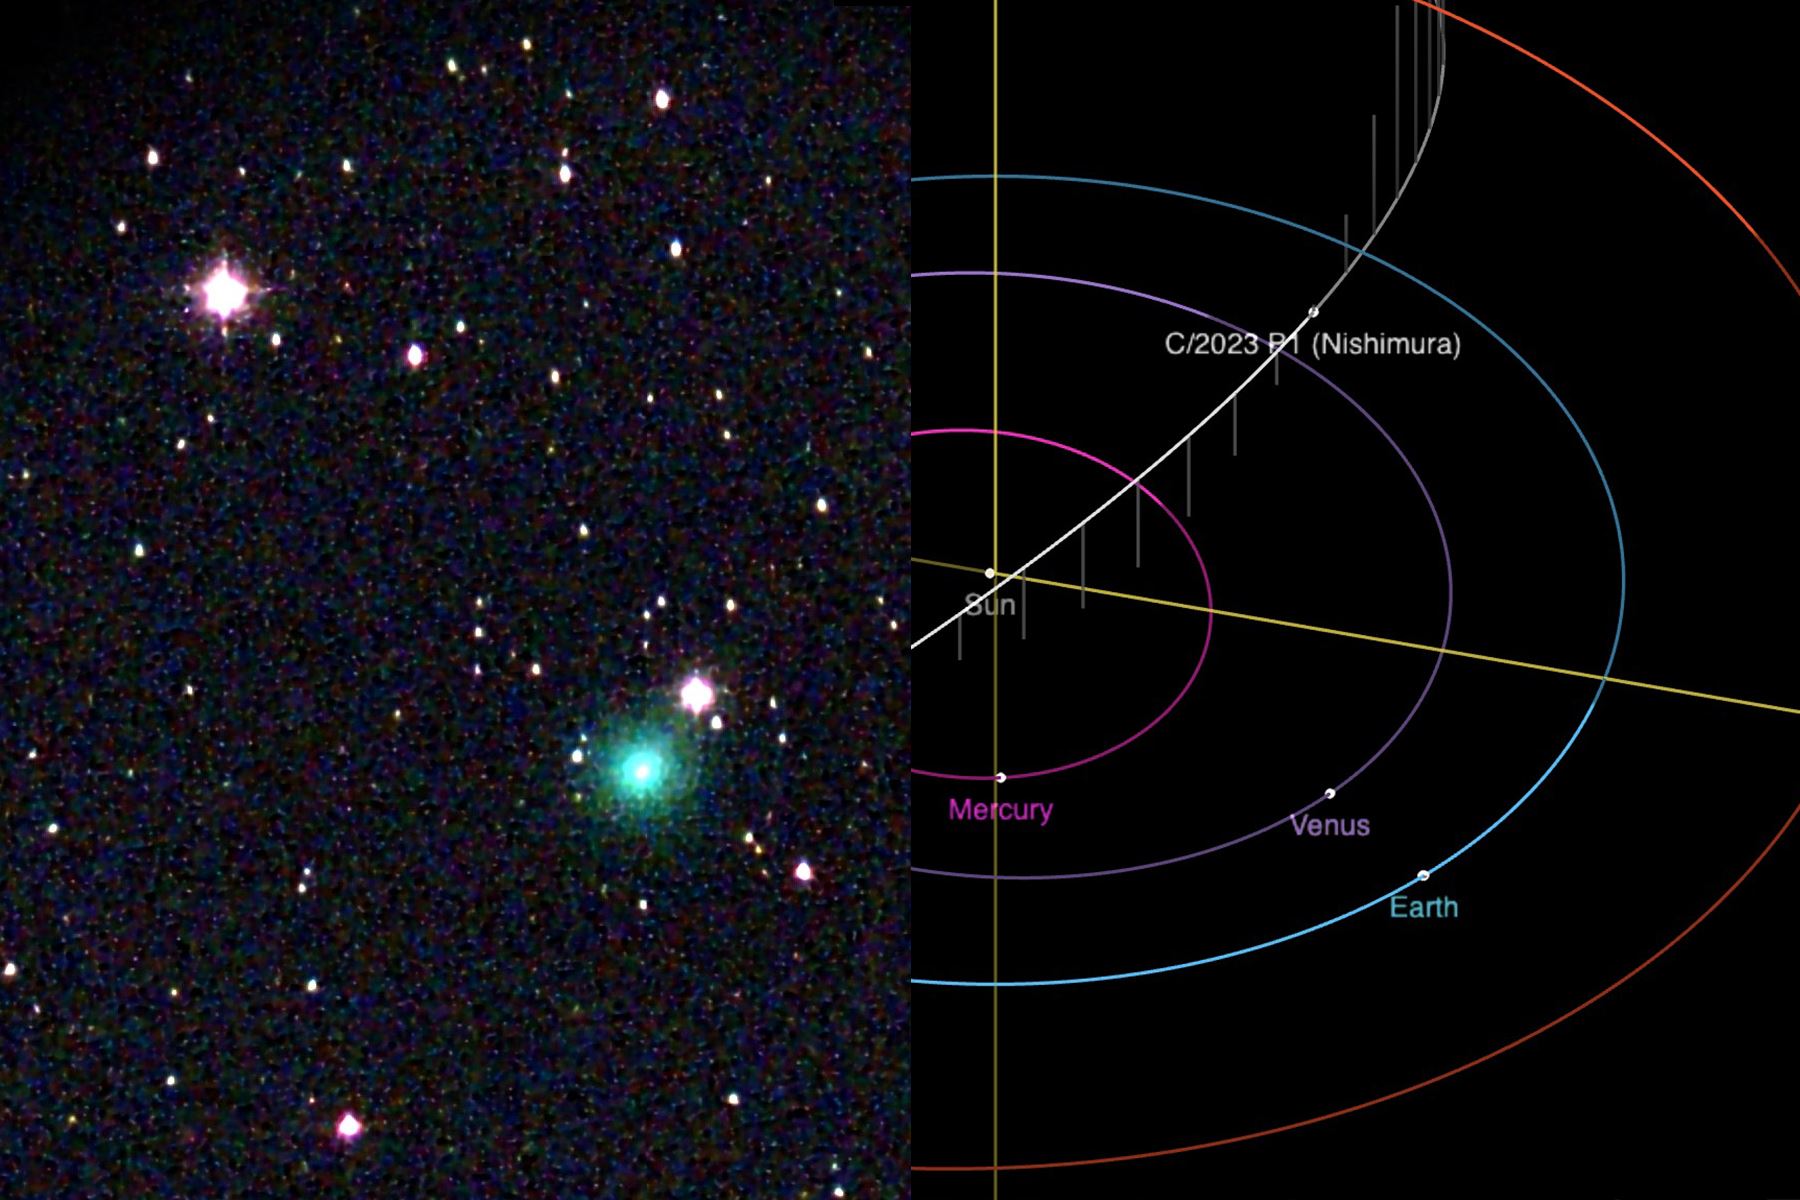 El Centro de Planetas Menores informó que el cometa fue nombrado C/2023 P1 (Nishimura), en honor a su descubridor.